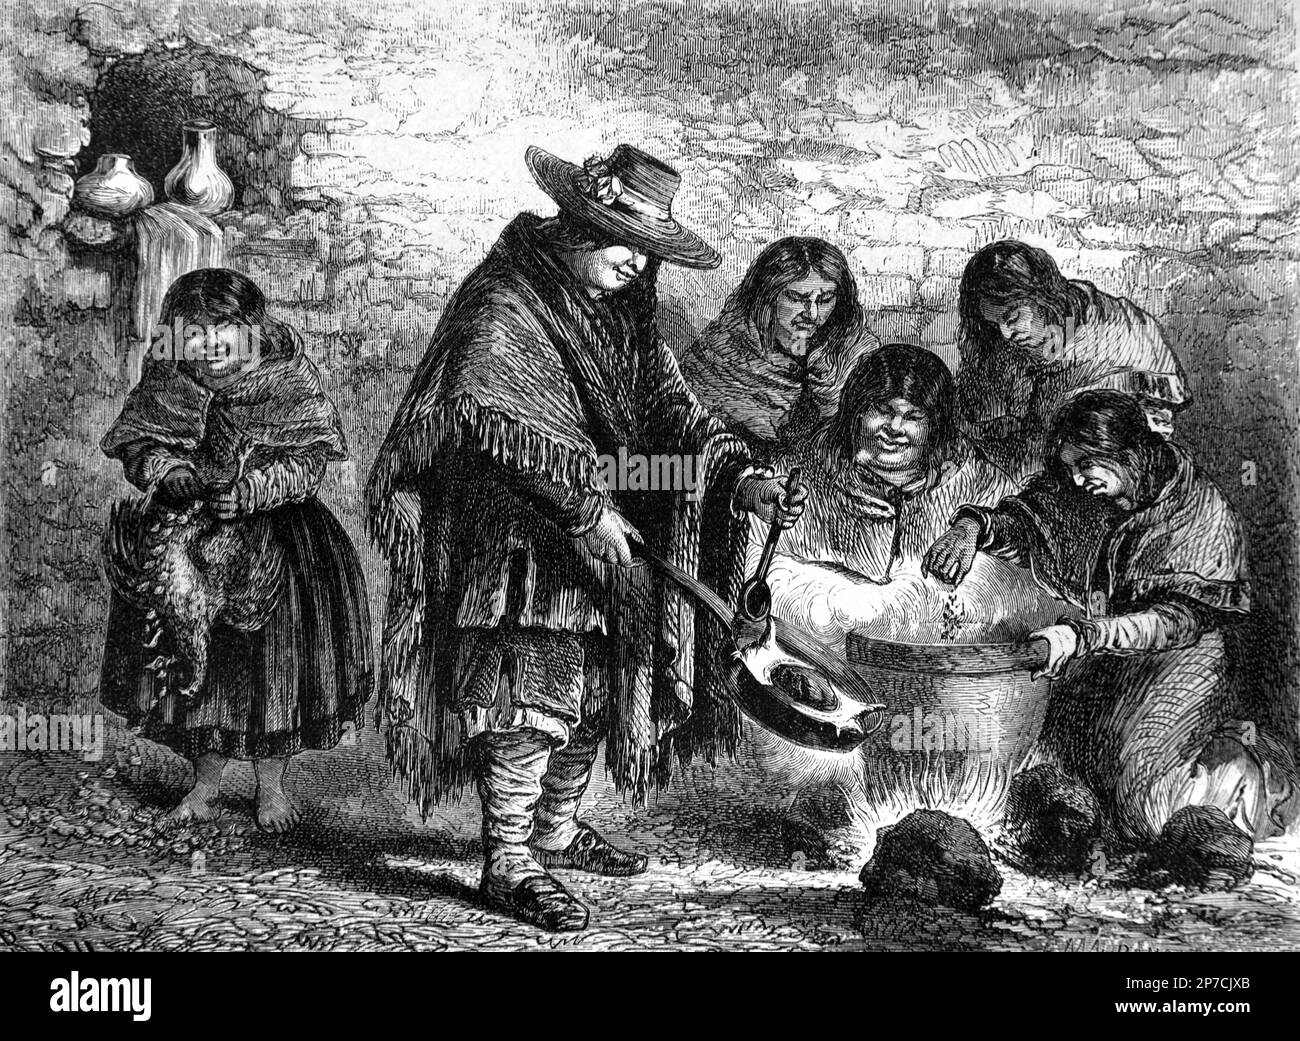 Repas communautaire chez les Amérindiens, les Amérindiens ou les Quechua à Machupicchu ou Machupicchu Pueblo, alias Aguas Calientes Pérou. Gravure ou illustration vintage ou historique 1862 Banque D'Images